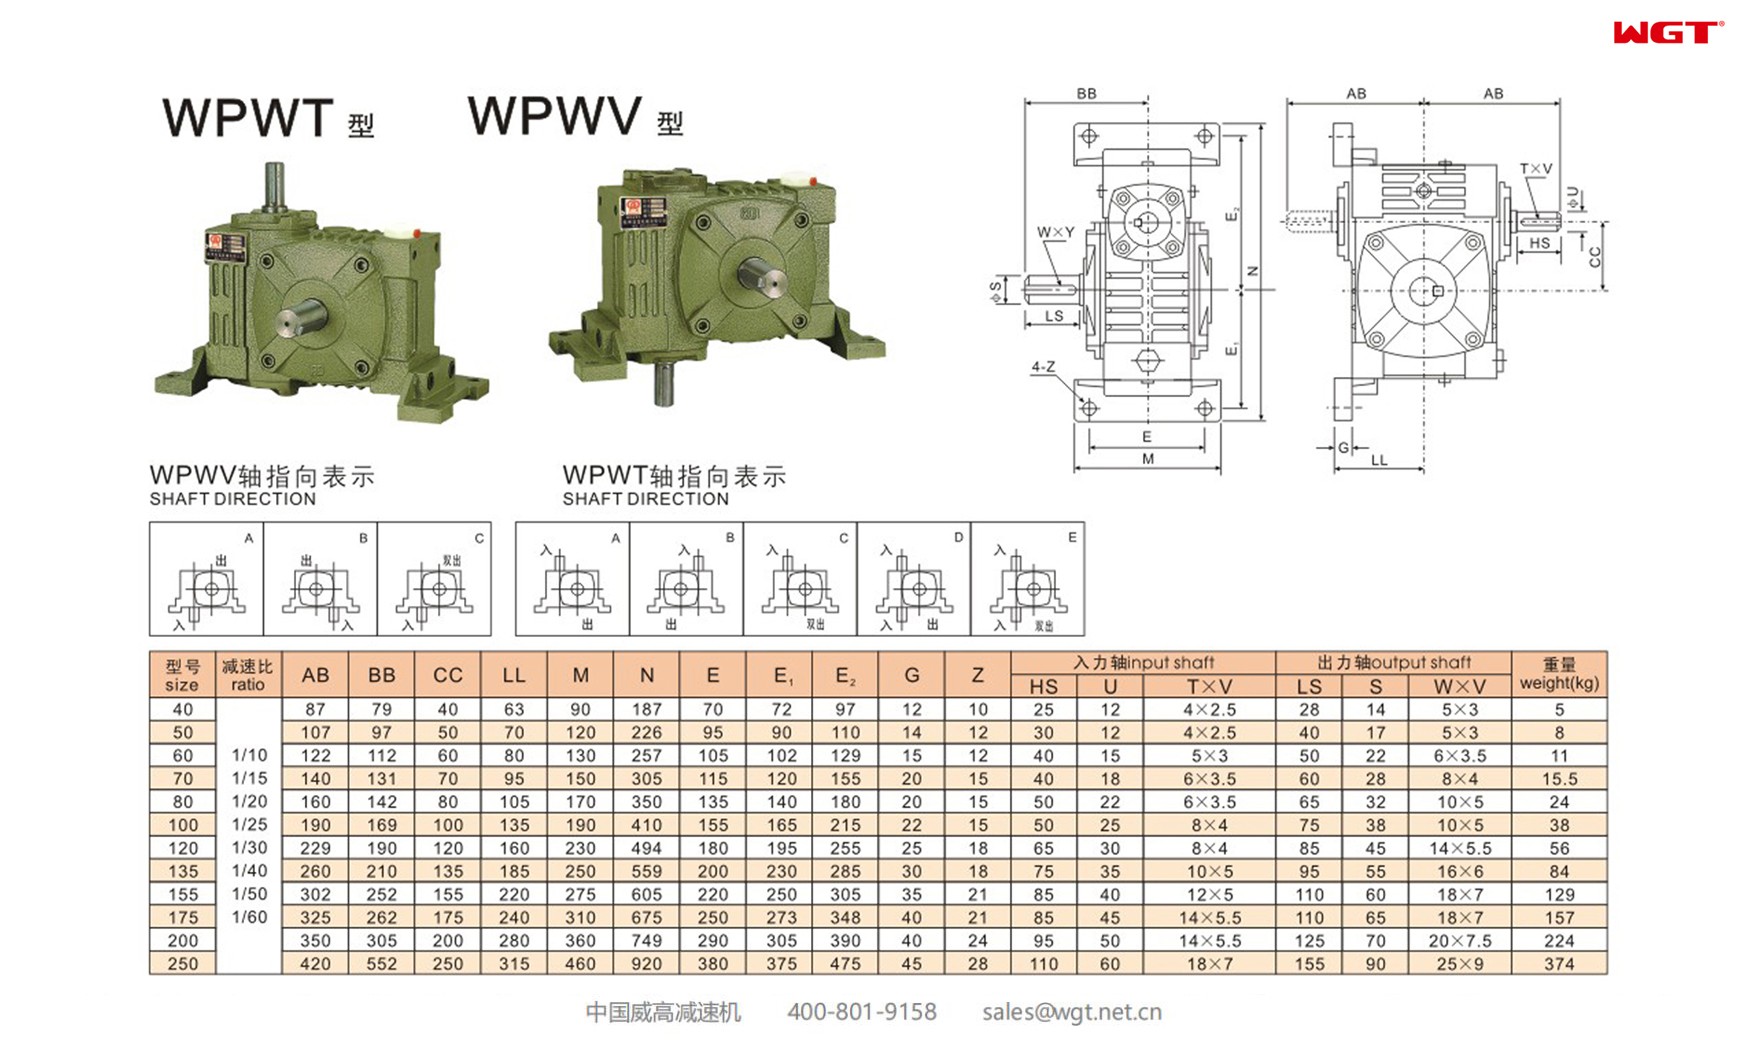 WPWT50 worm gear reducer universal speed reducer 